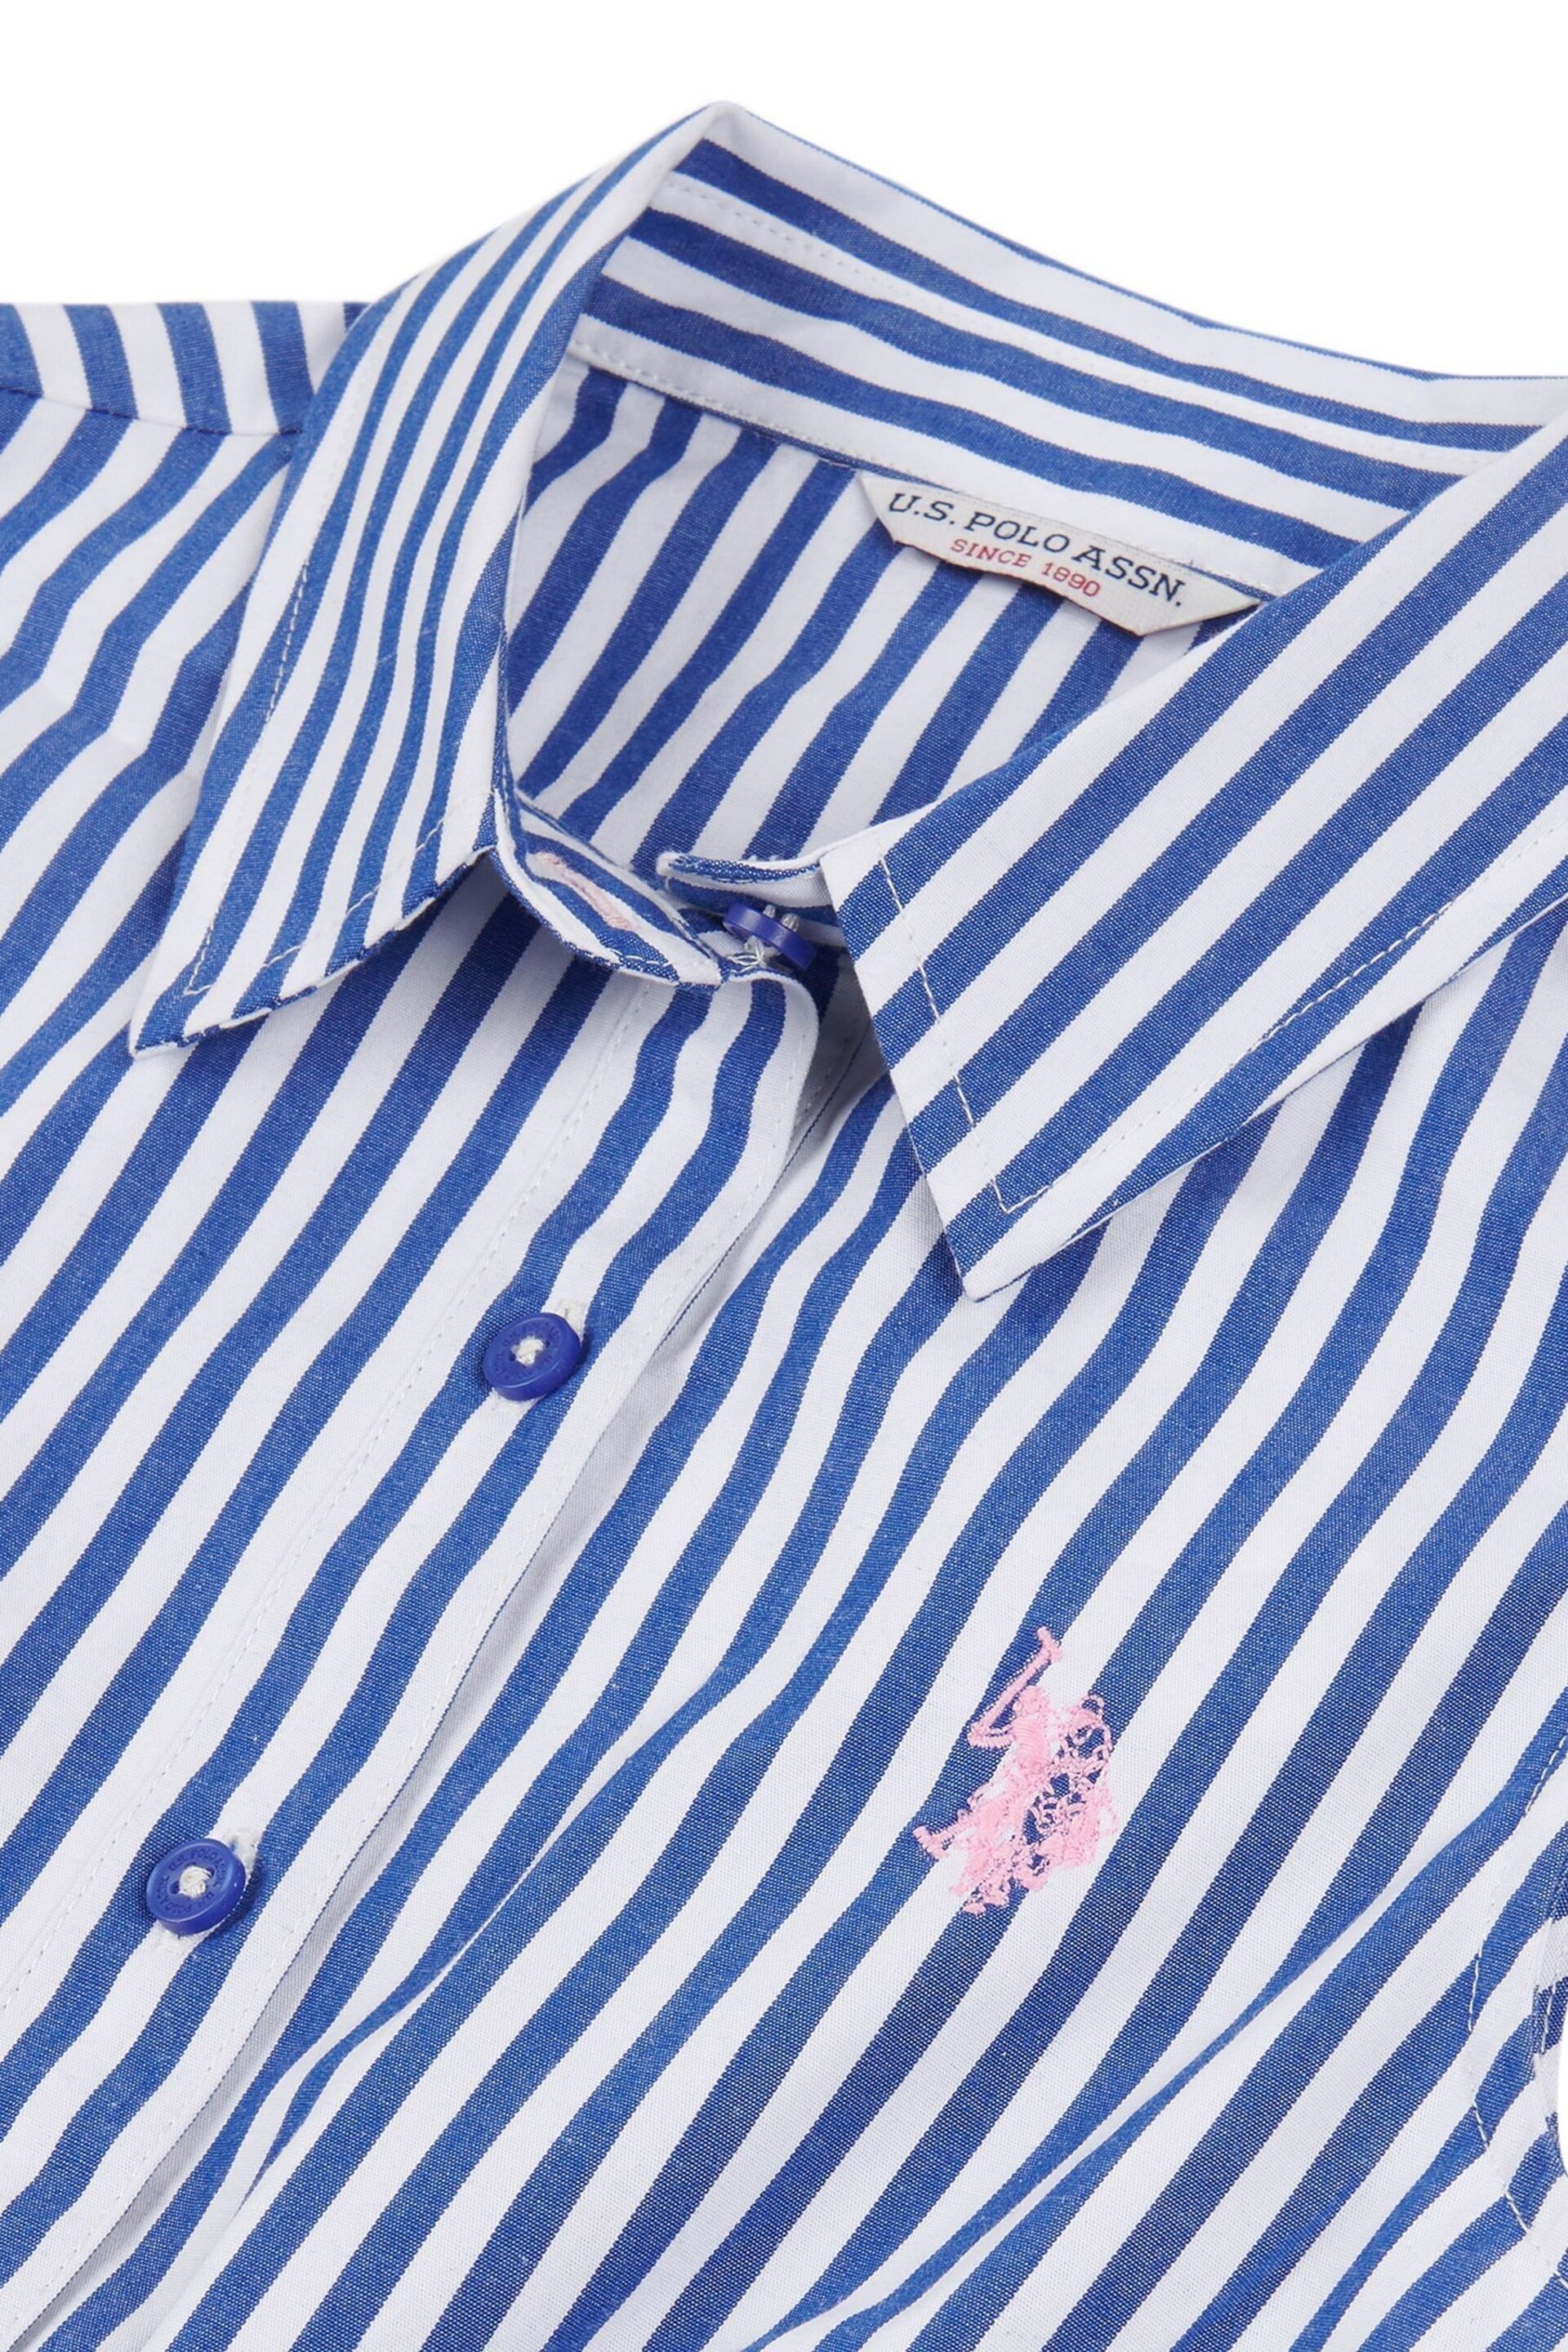 U.S. Polo Assn. Girls Blue Striped Sleeveless Shirt Dress - Image 6 of 6